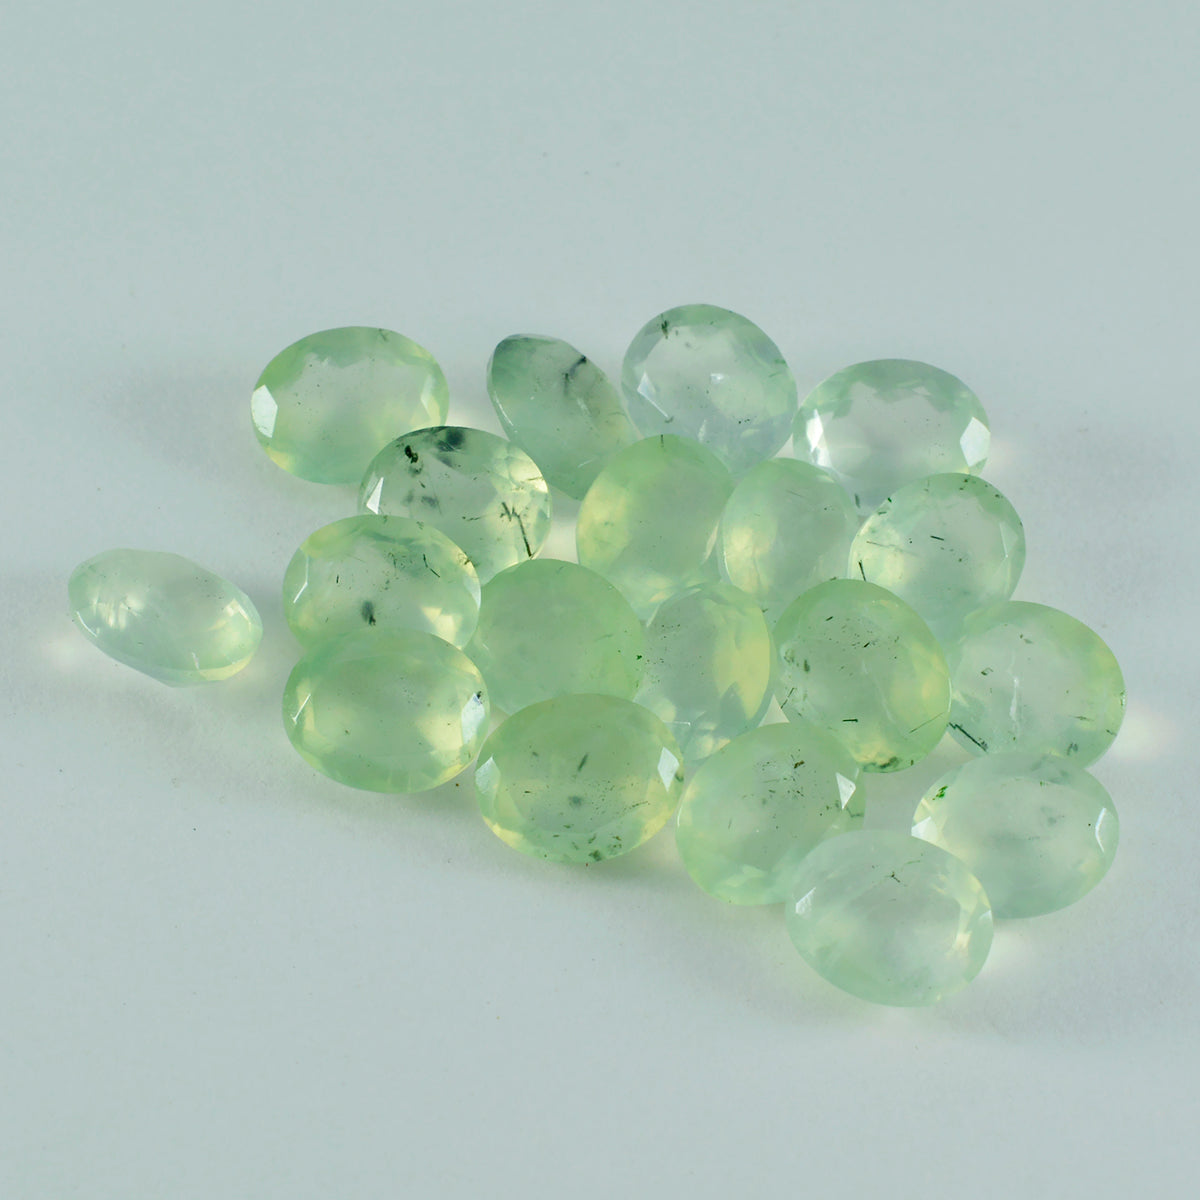 Riyogems 1 pièce de préhnite verte à facettes 6x8 mm forme ovale jolie pierre précieuse en vrac de qualité